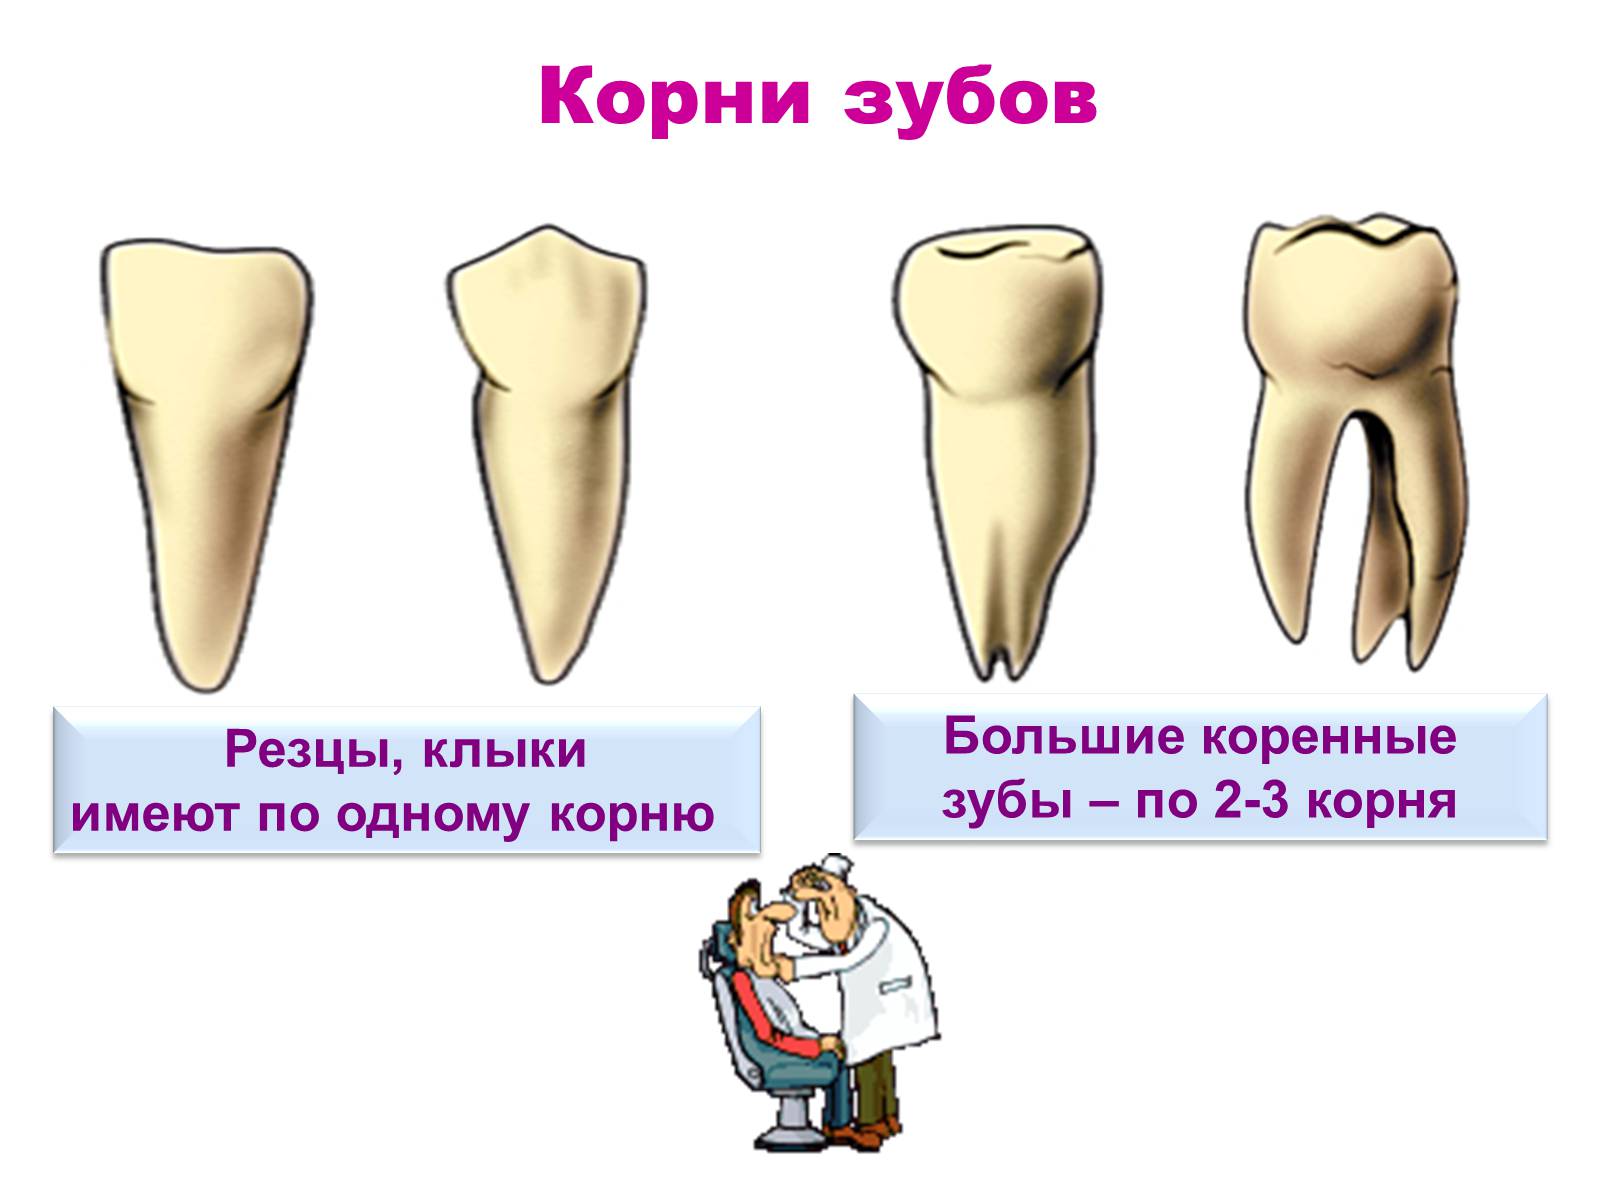 Удаленный коренной зуб